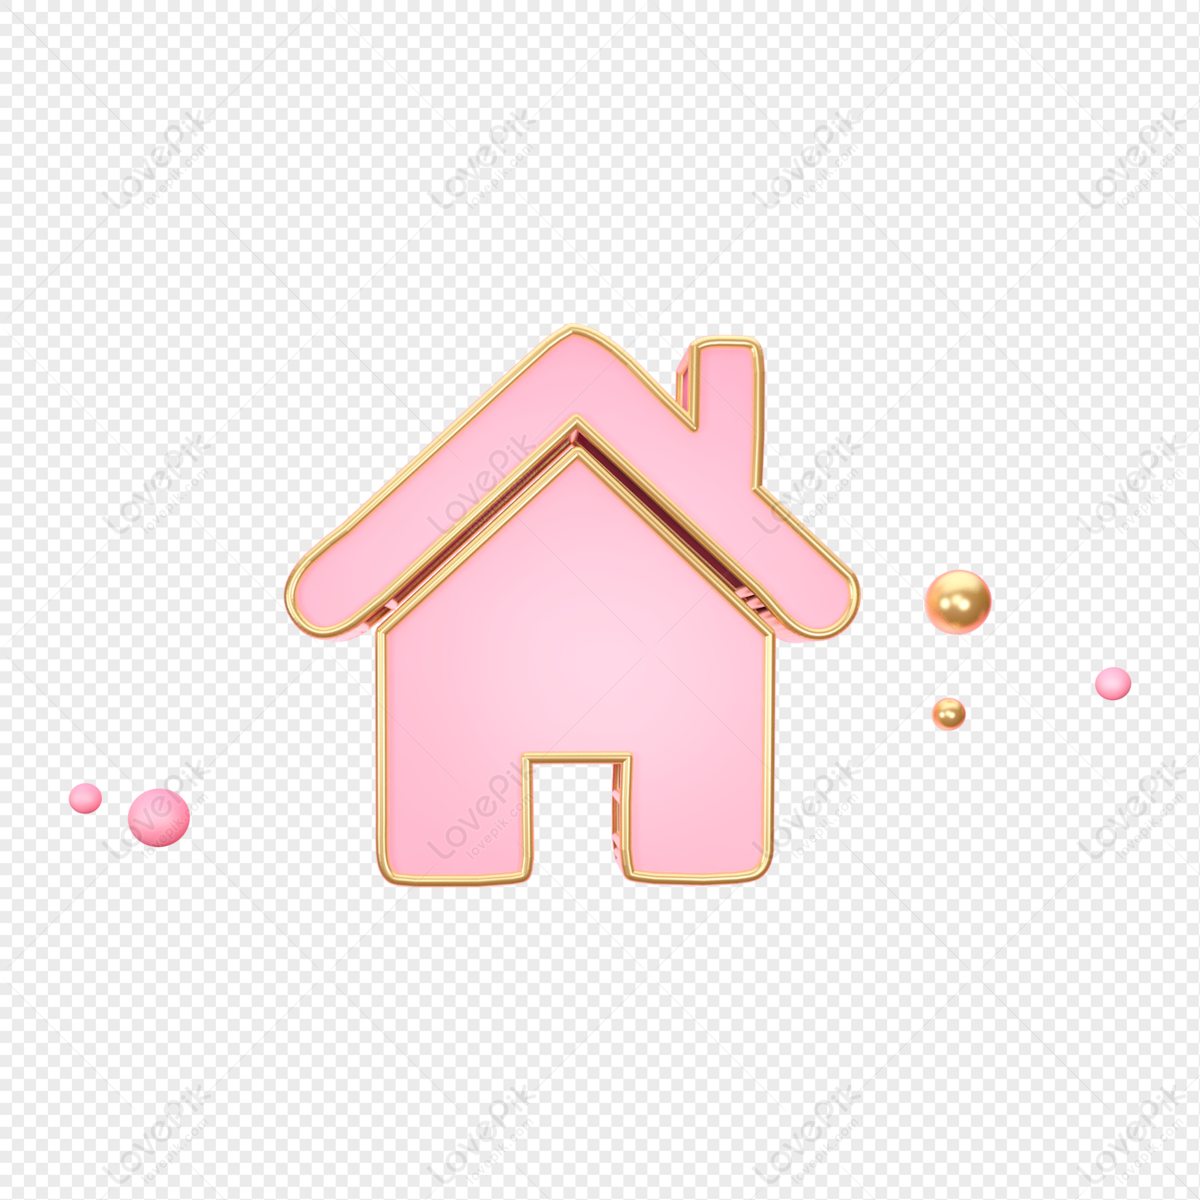 Nhà màu hồng: Năm 2024, những căn nhà màu hồng trở thành xu hướng phổ biến cho các gia đình trẻ và yêu thích sự năng động. Màu hồng với tông sáng rực rỡ không chỉ làm cho ngôi nhà trông ấm áp và đáng yêu hơn, mà còn truyền tải một thông điệp tích cực và vui tươi. Hòa cùng trào lưu này, hãy cùng khám phá không gian sống đầy sống động trong các căn nhà màu hồng.